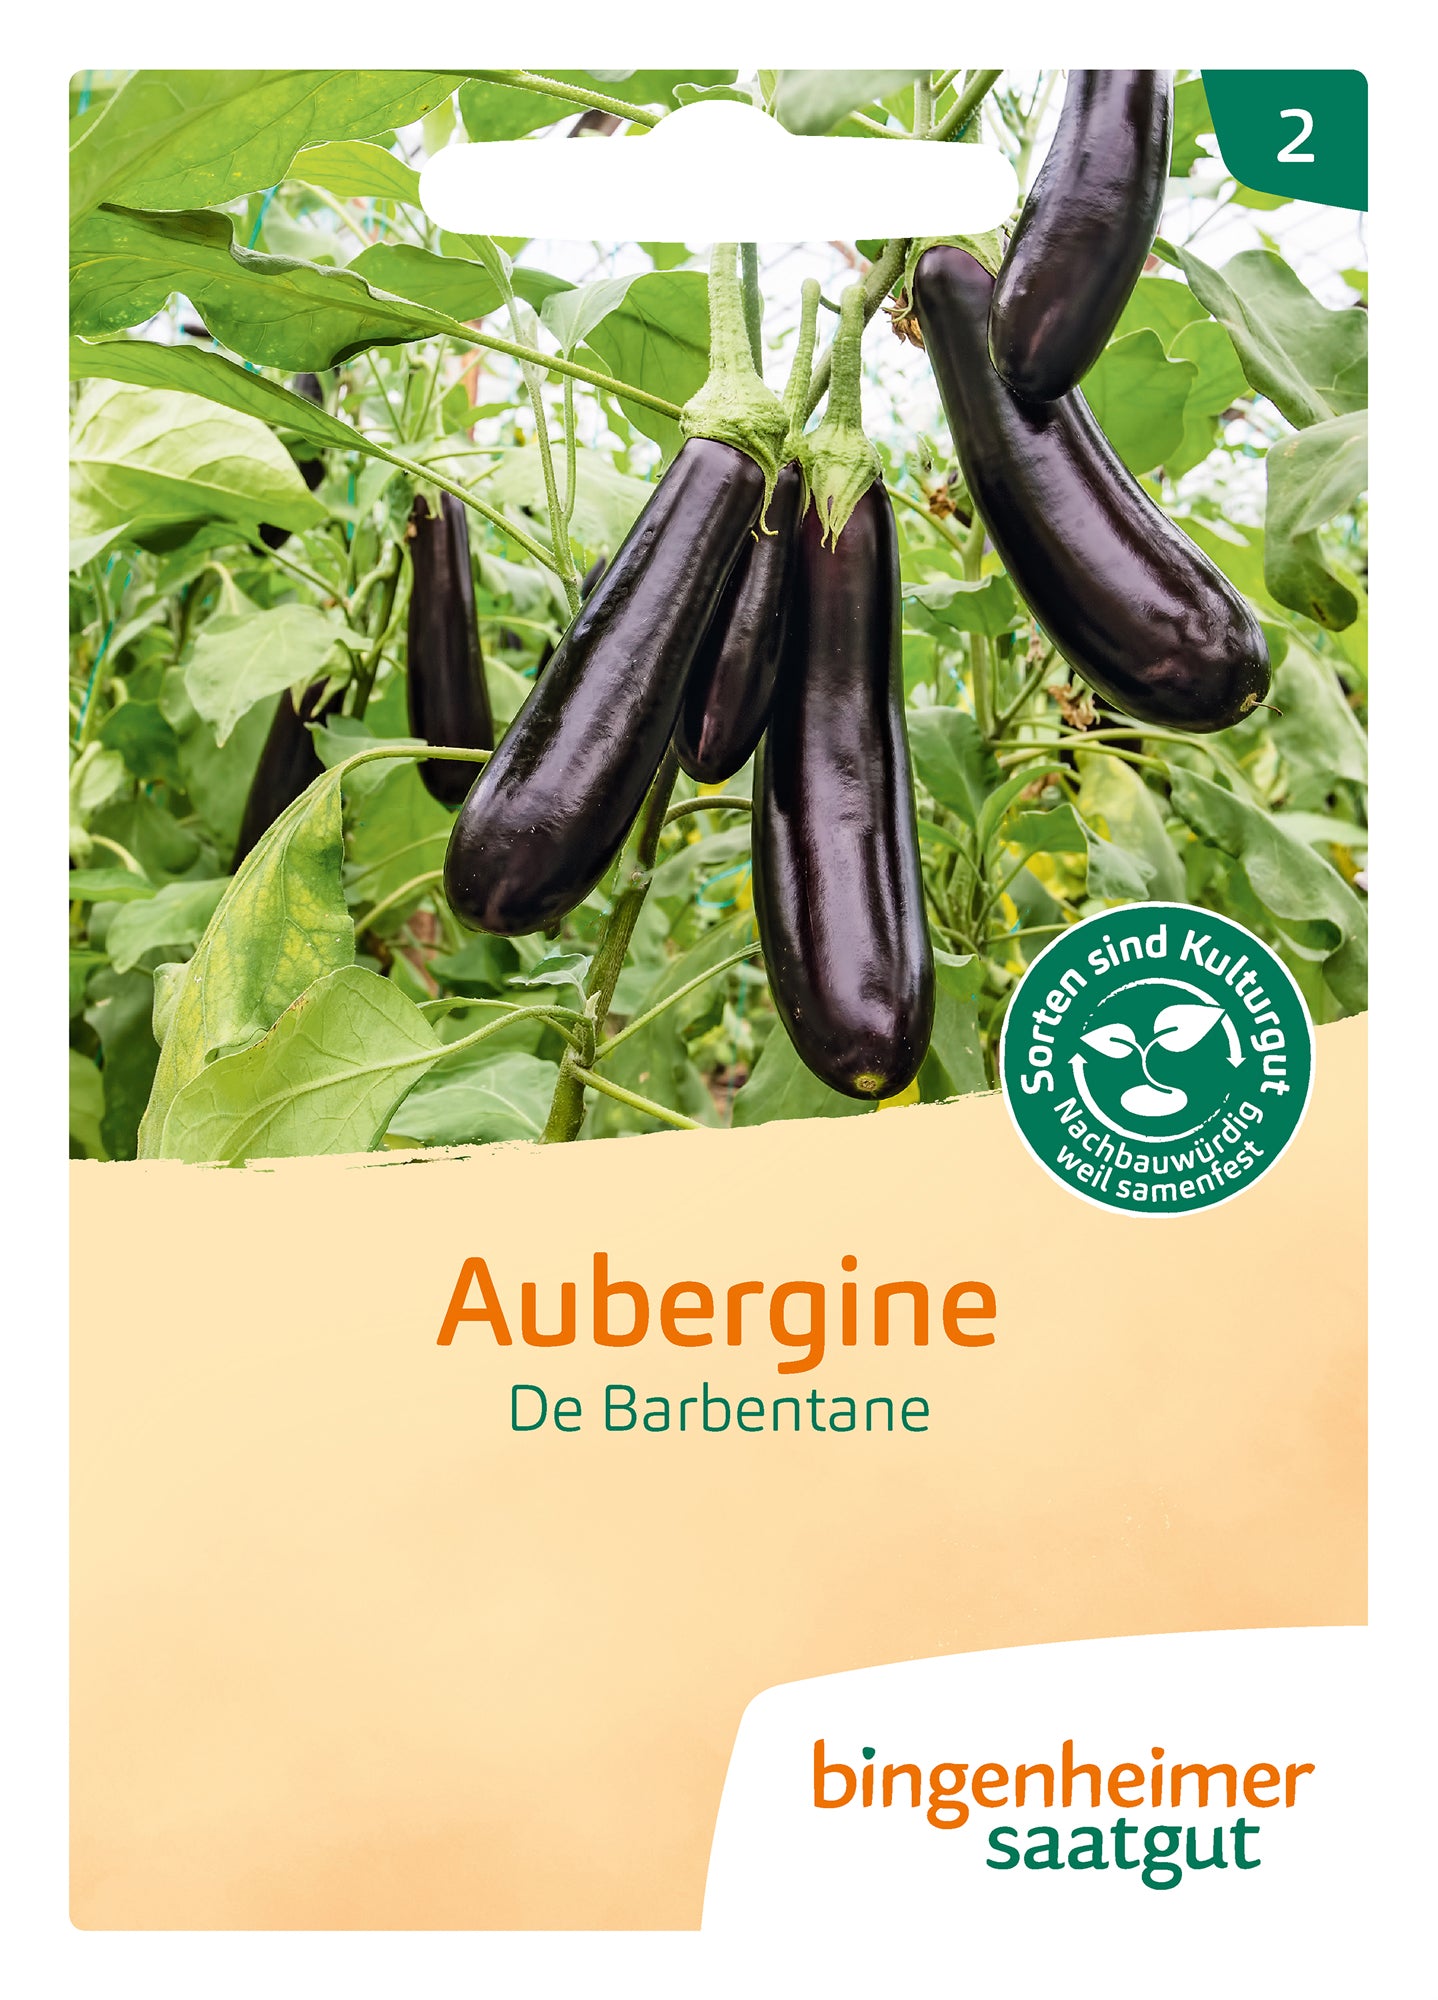 Aubergine De Barbentane | BIO Auberginensamen von Bingenheimer Saatgut